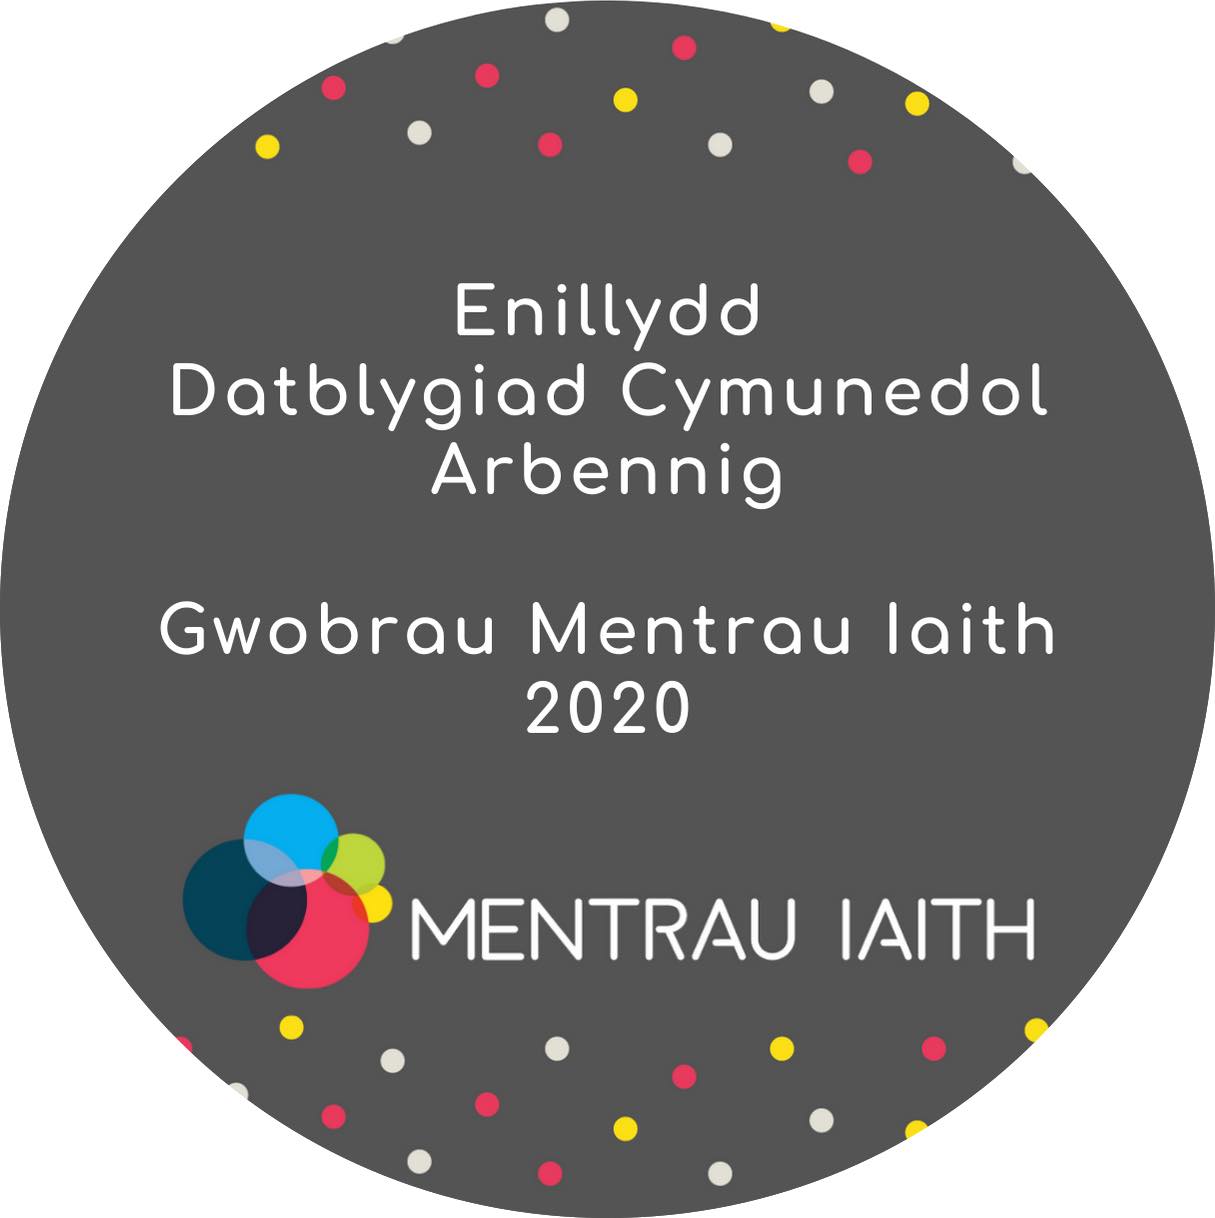 Our Mentrau Iaith Award